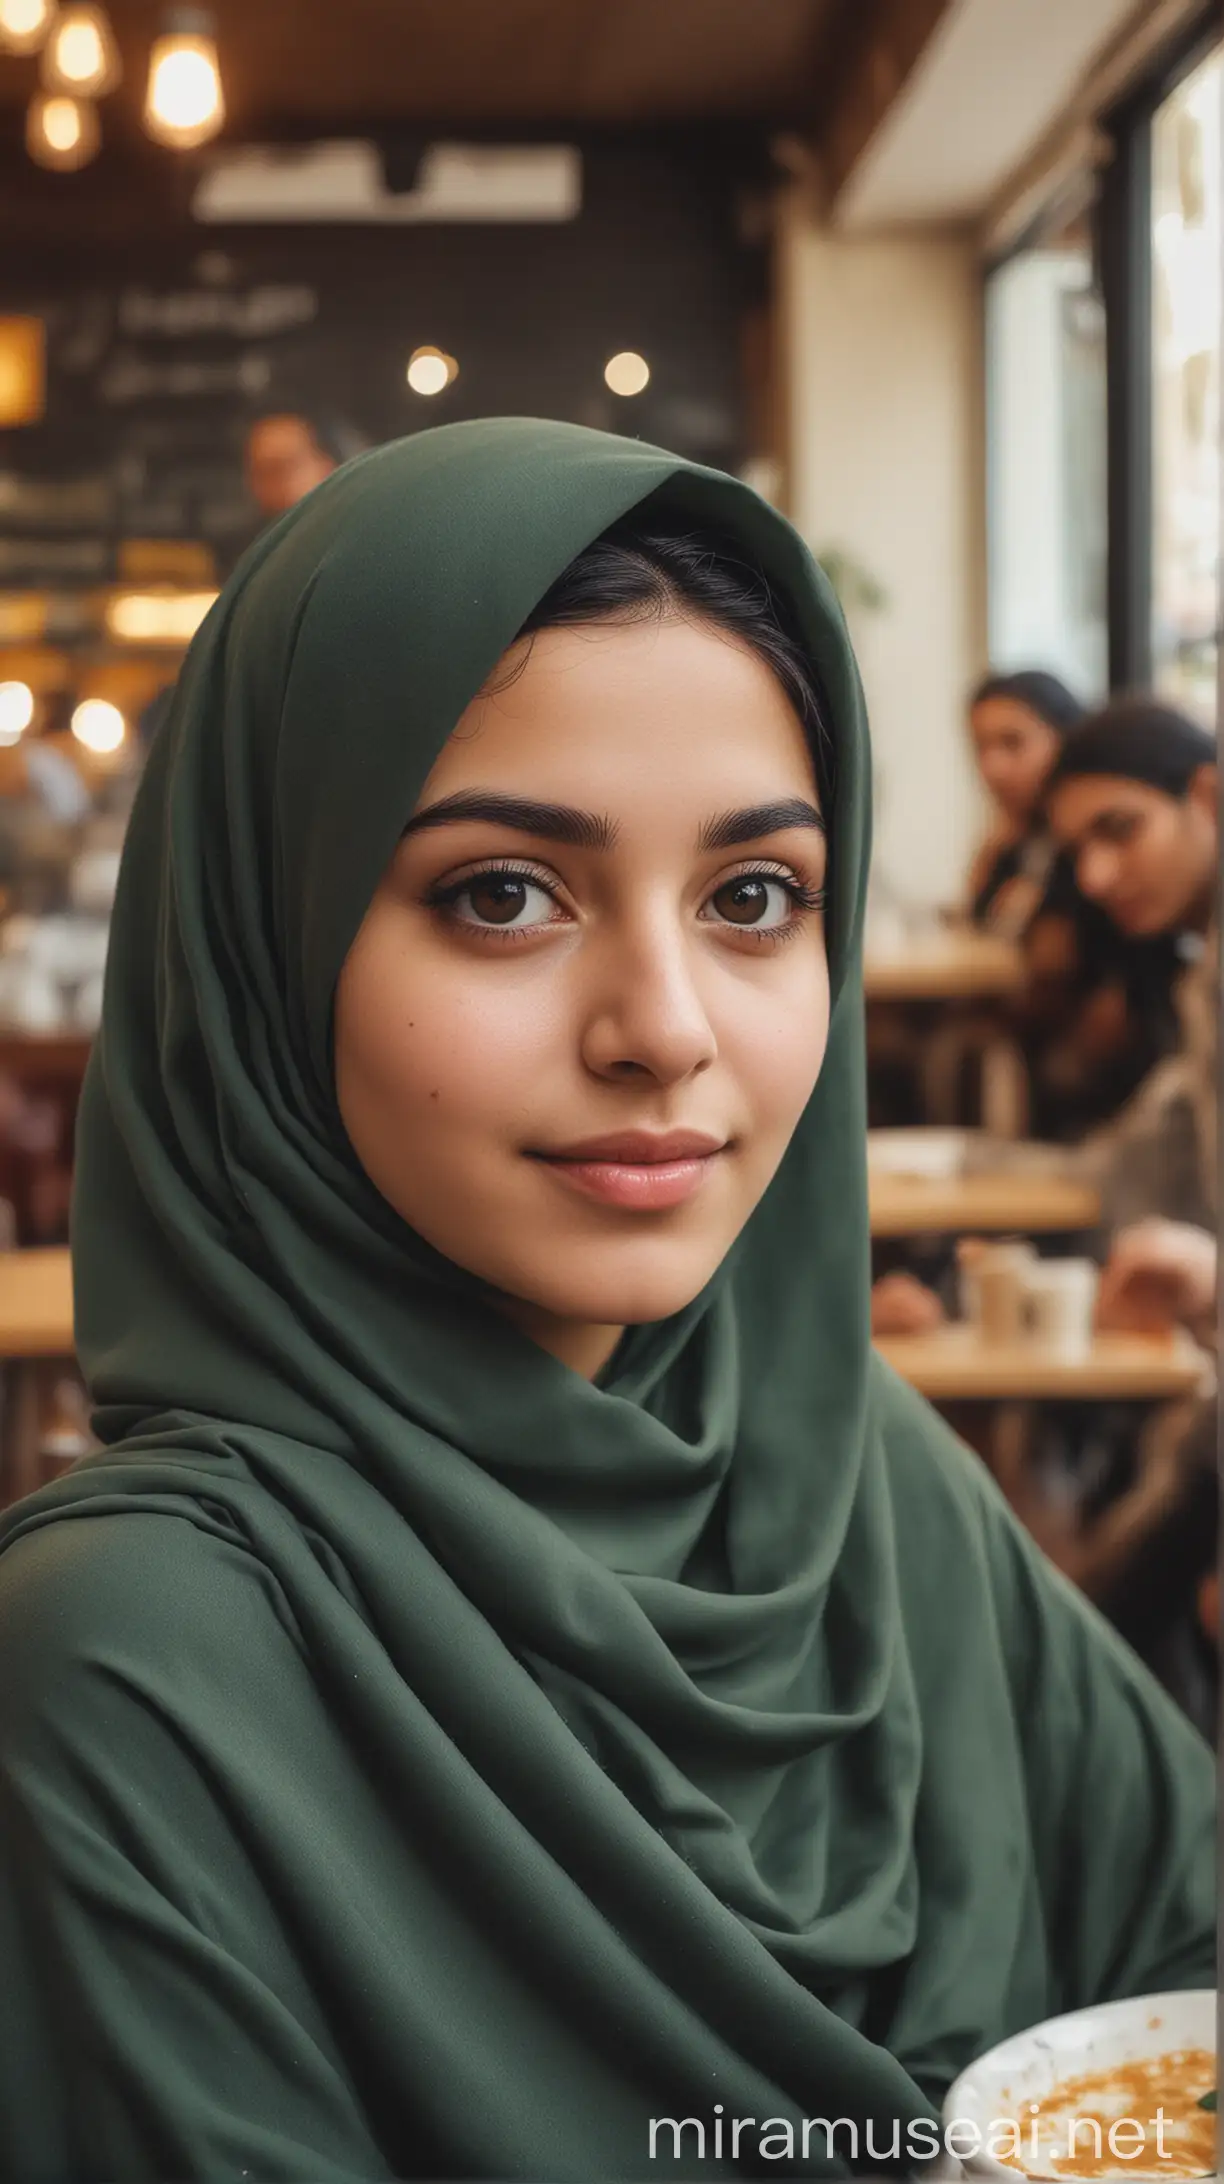 Iranian Girl Wearing Hijab Enjoys Tea at Cozy Cafe